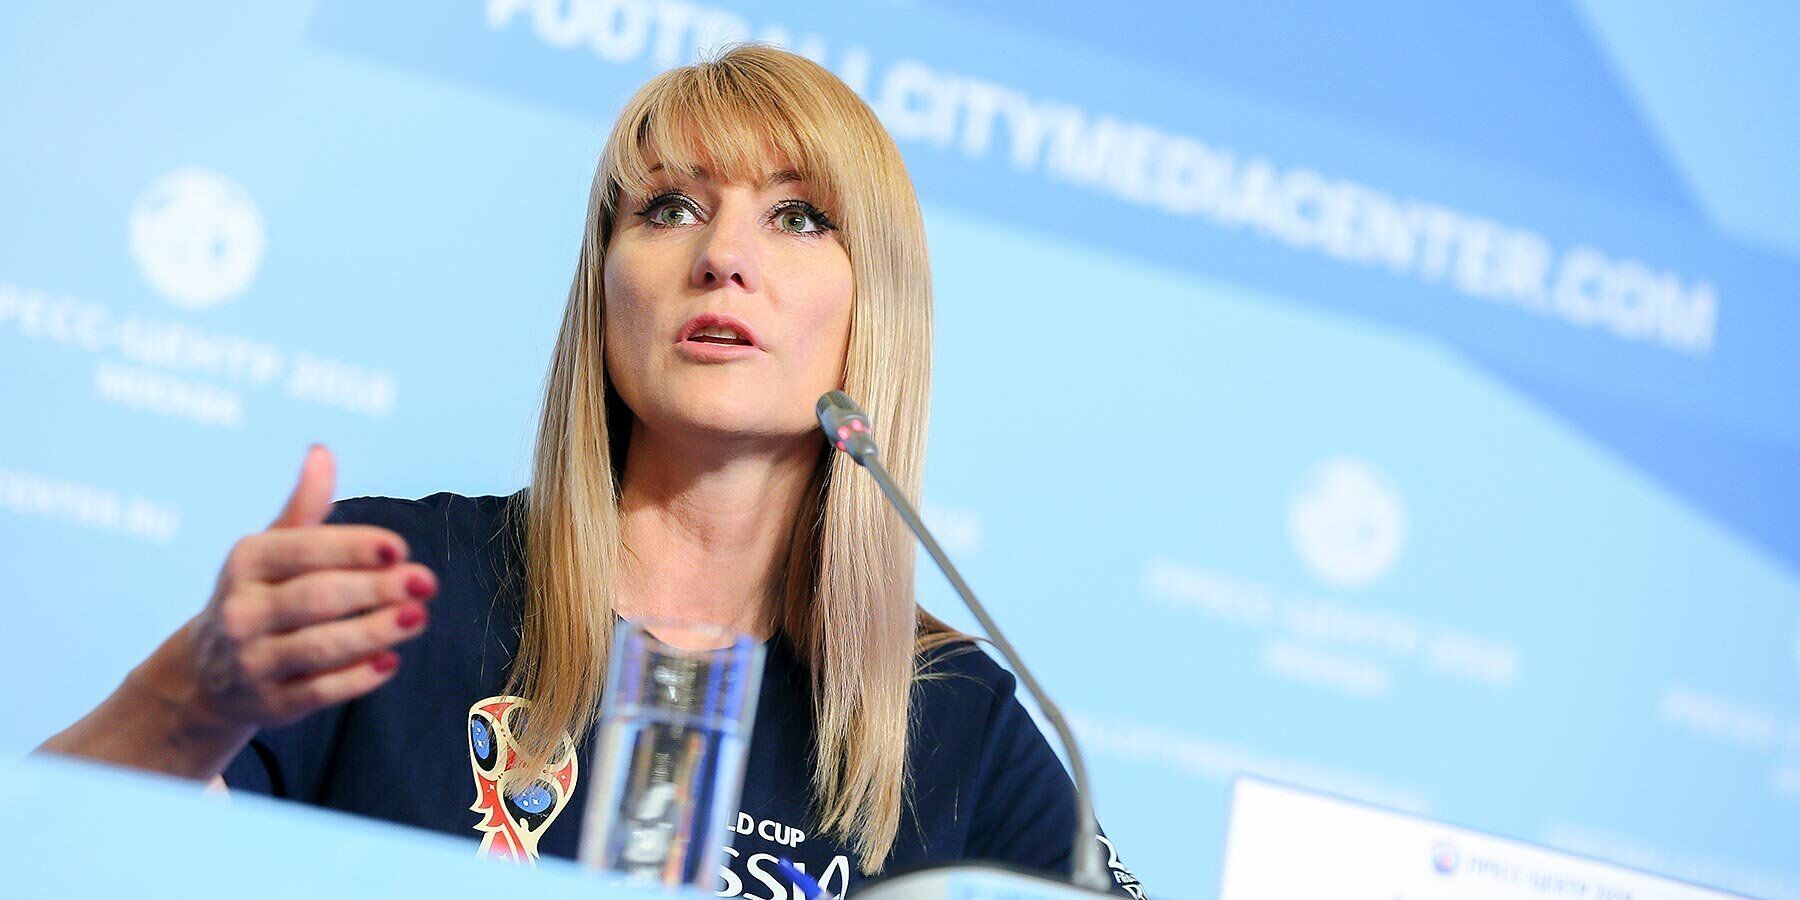 ''Sankcje służą dobru'': Duma Państwowa pokochała opluwanie UEFA przez Rosję.